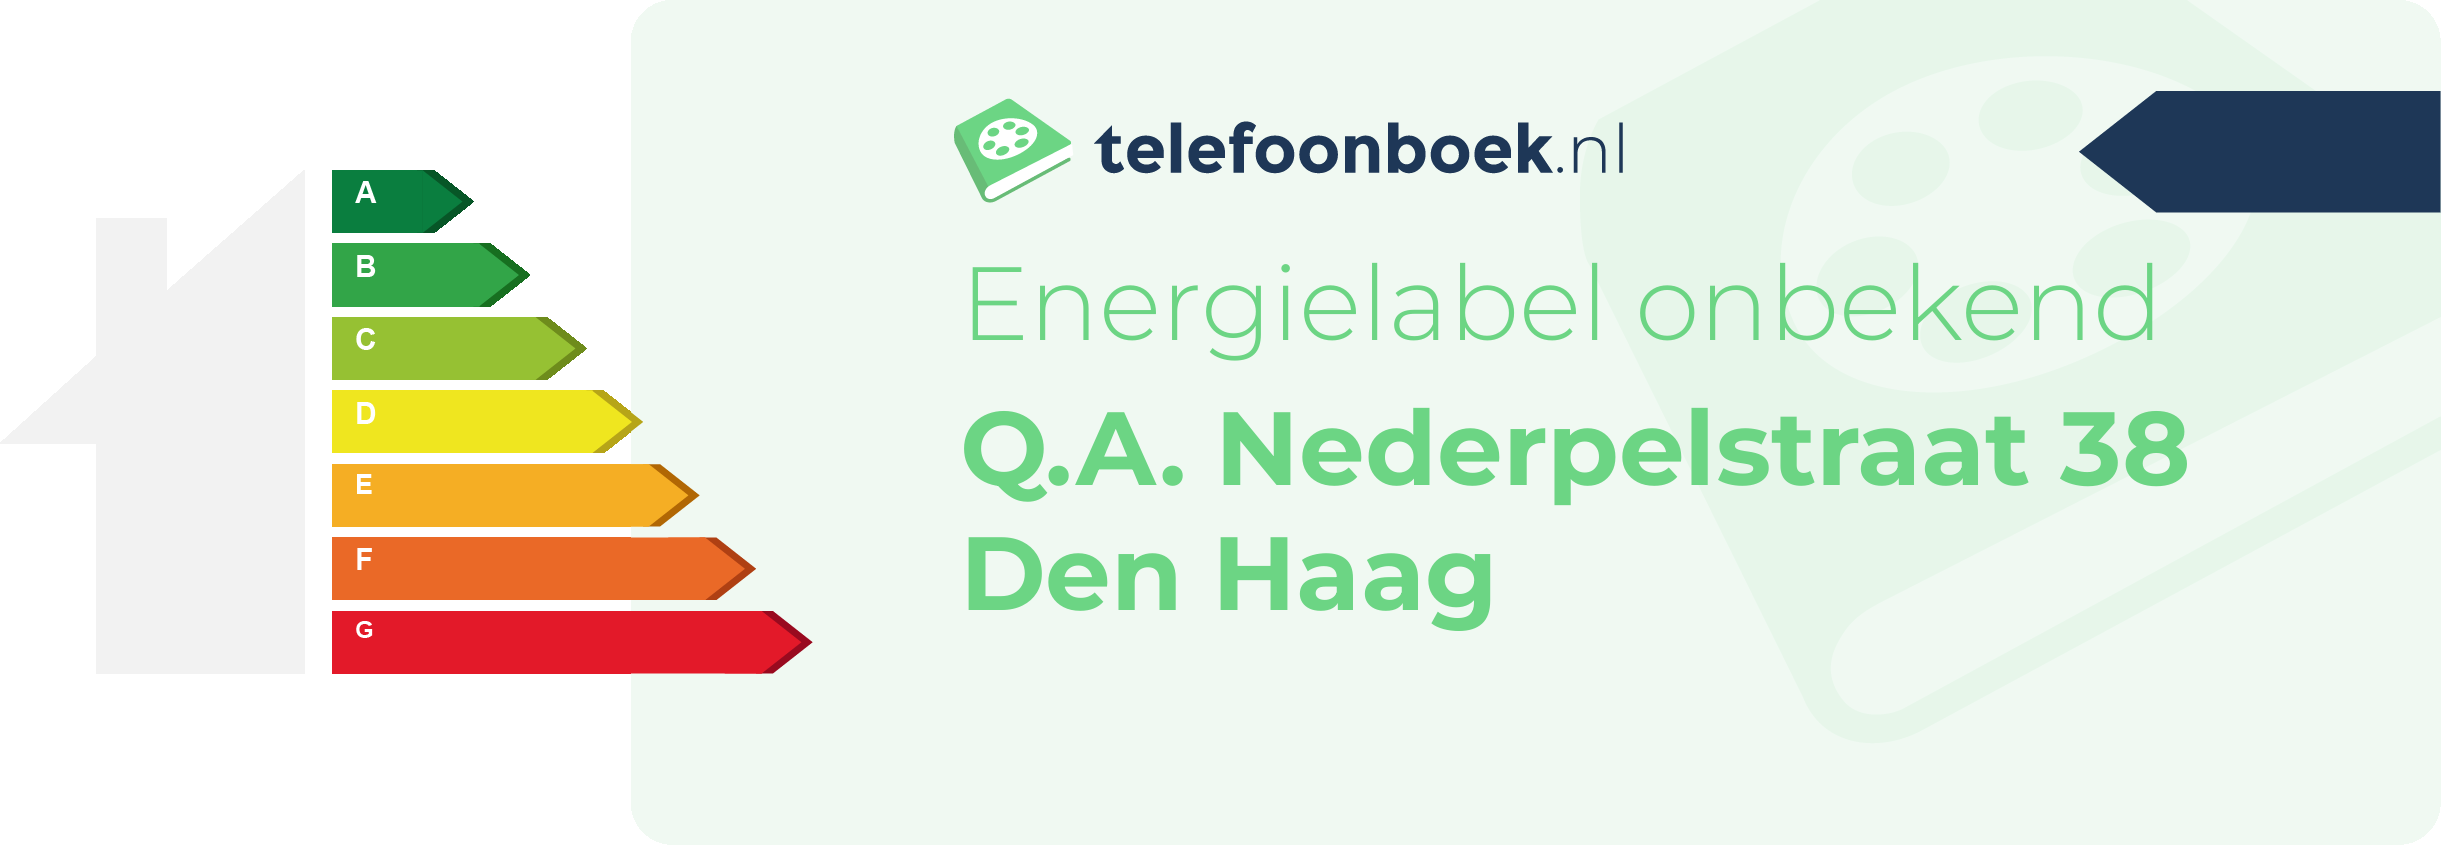 Energielabel Q.A. Nederpelstraat 38 Den Haag